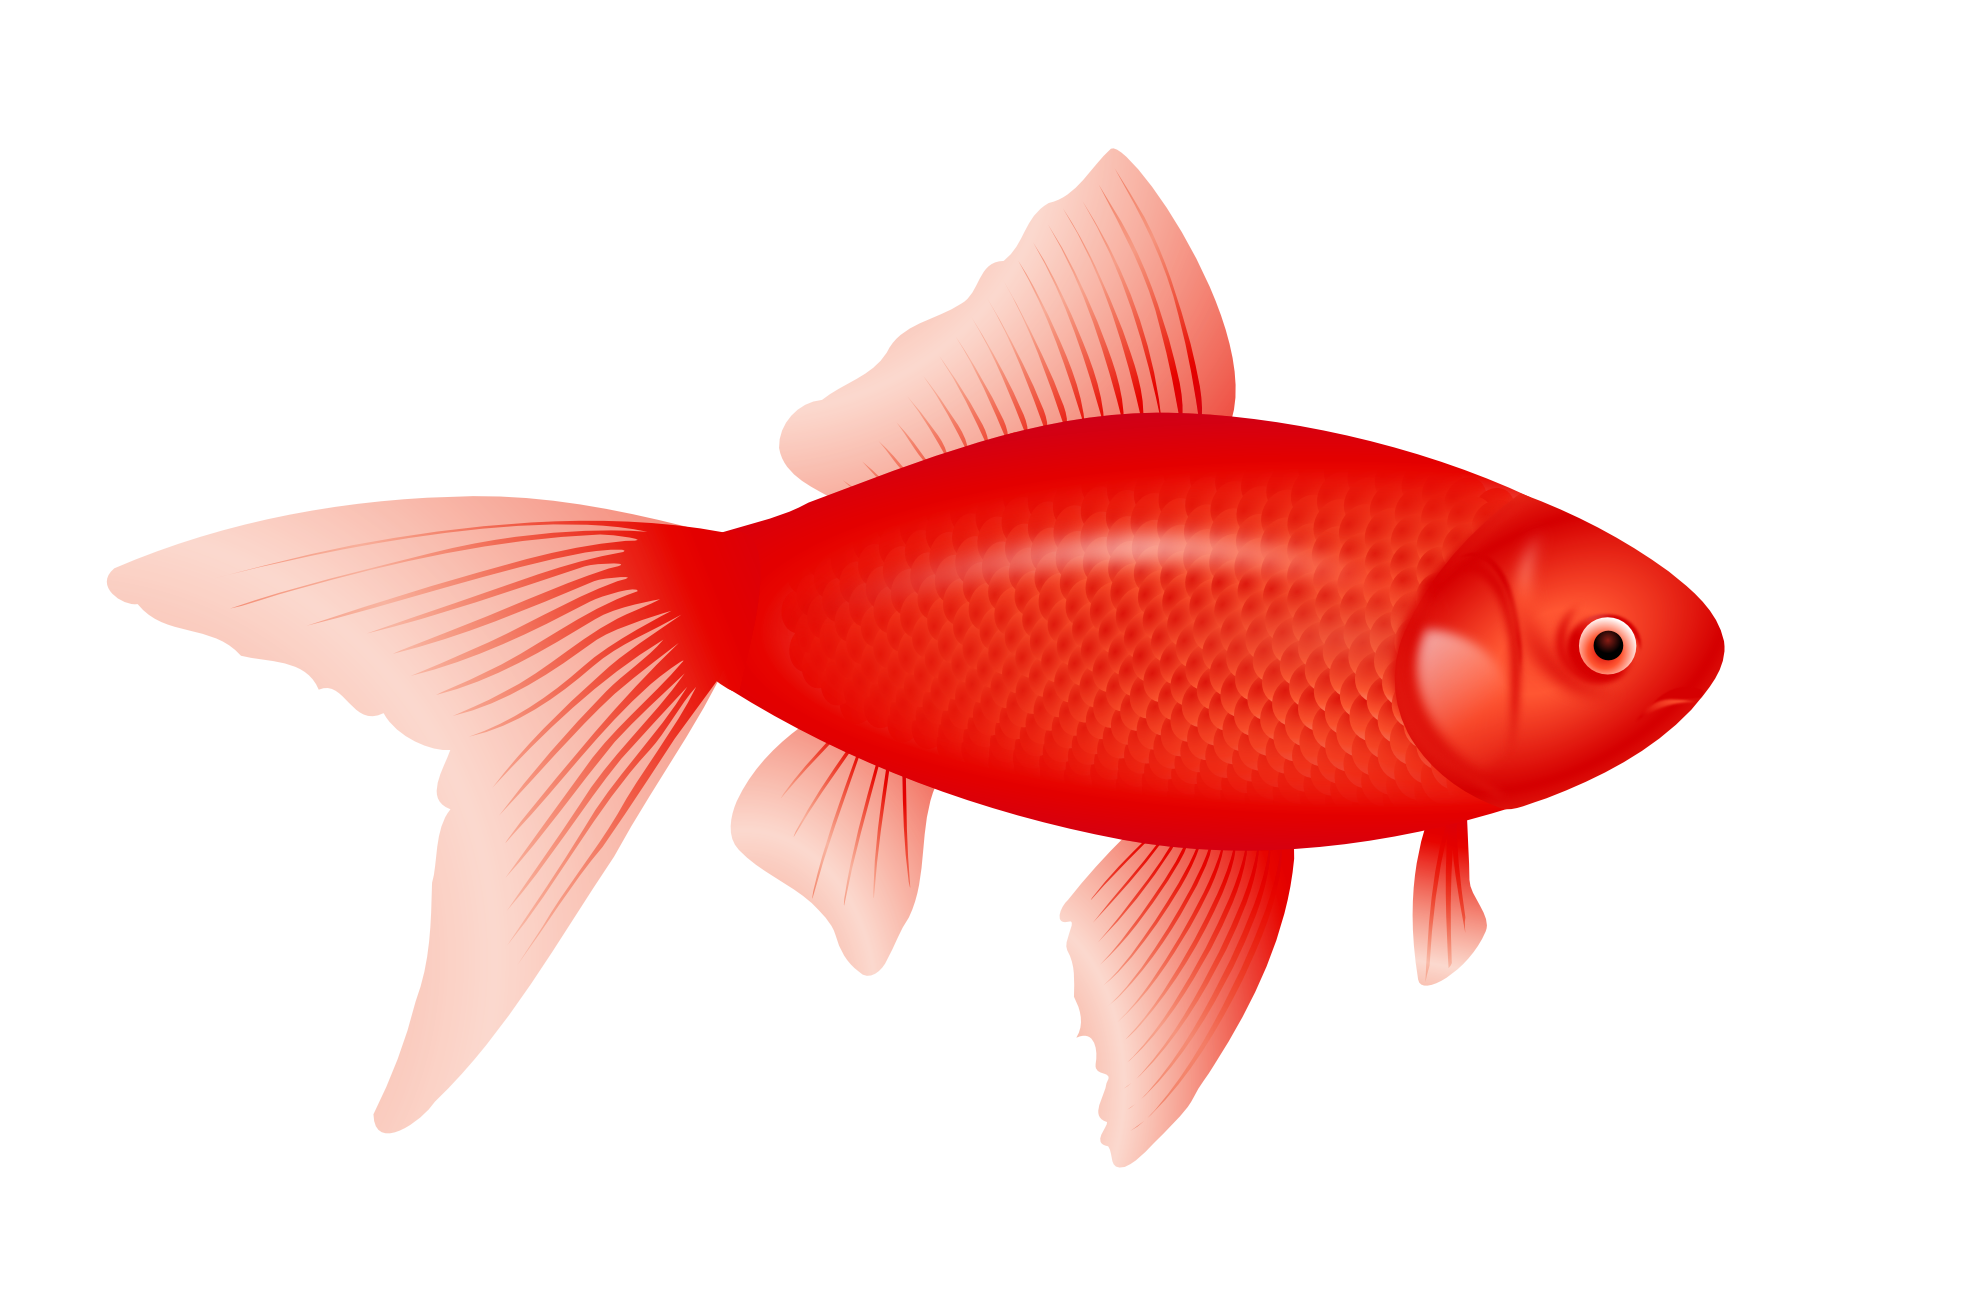 Peixe vermelho